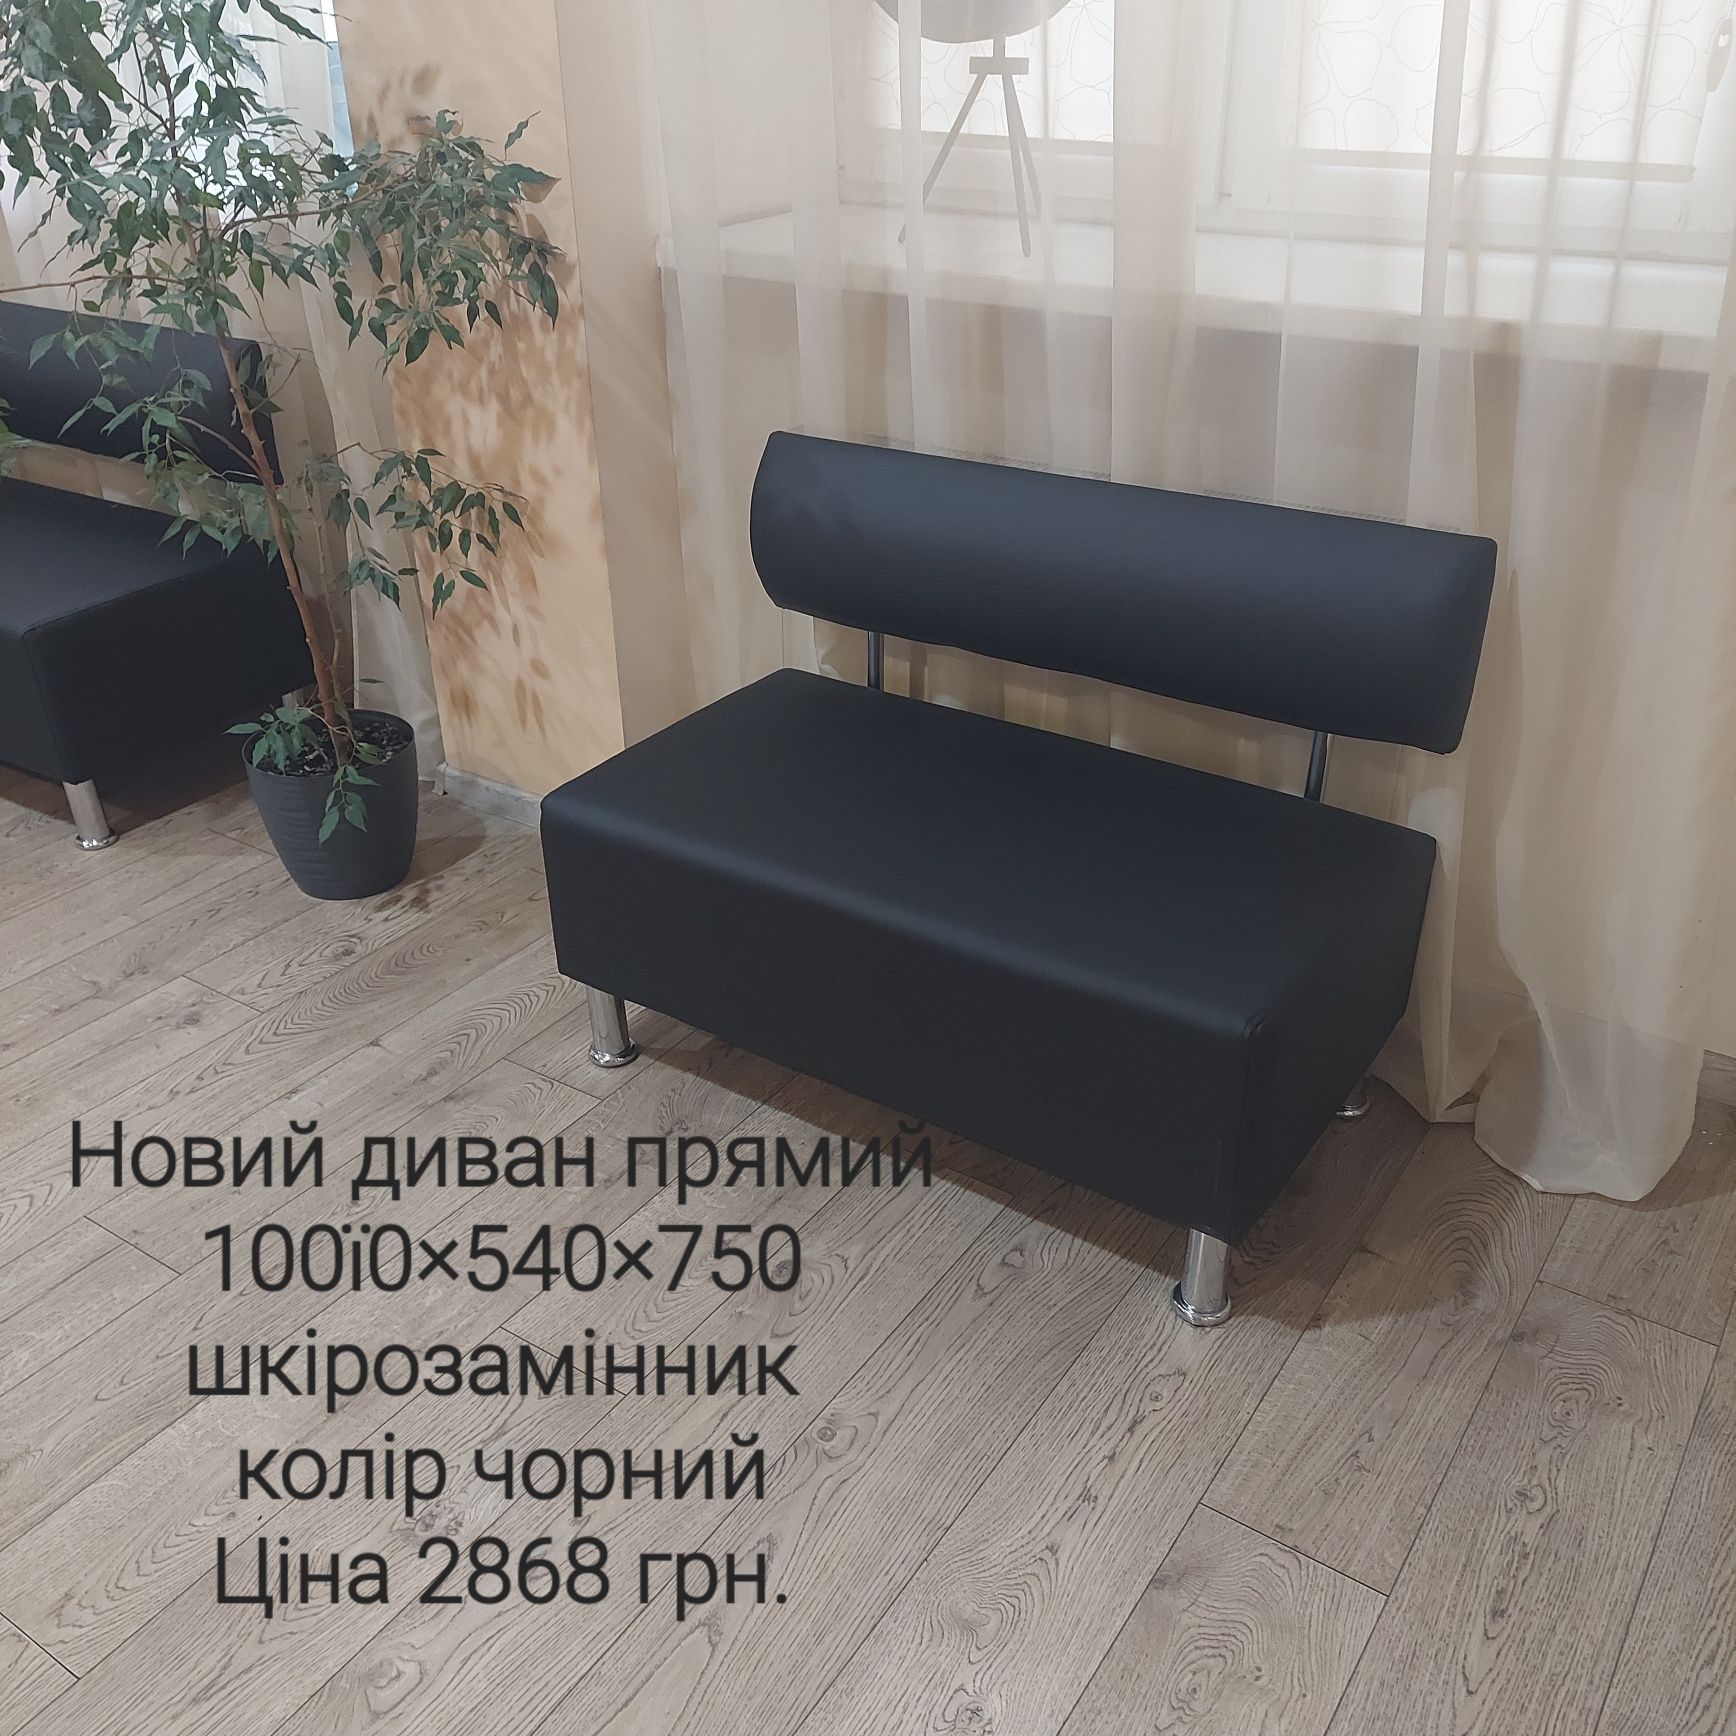 Продаються нові дивани,   як  для офісу так і для дому.